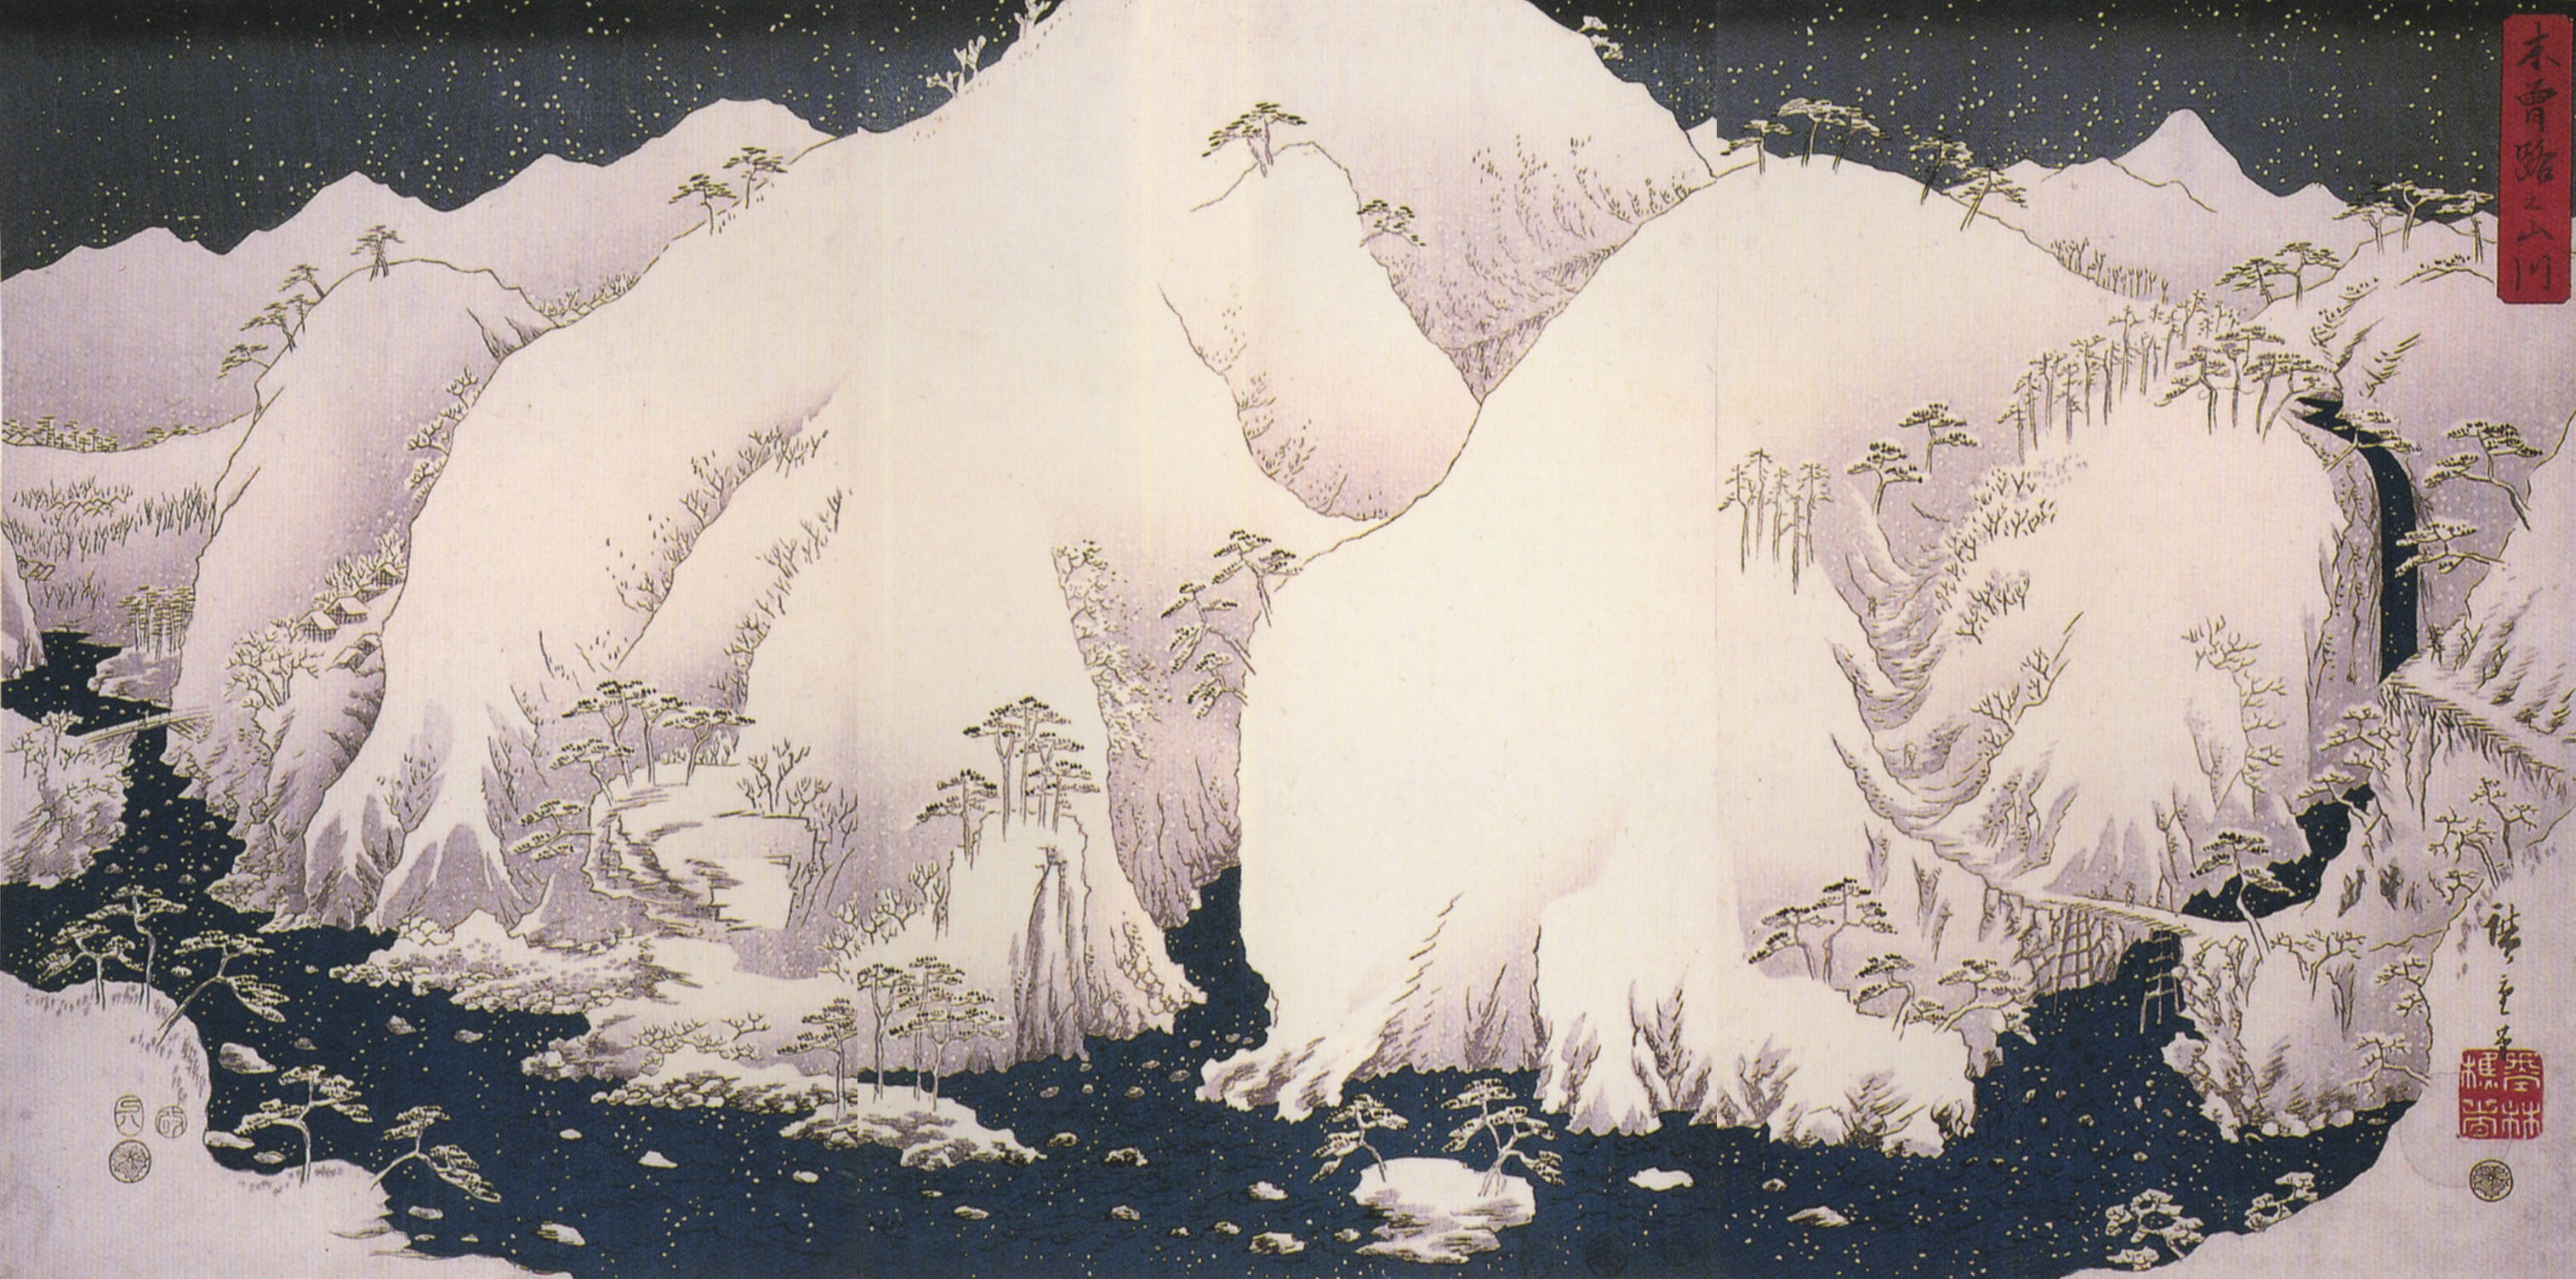 Une rivière parmi des montagnes enneigées by  Hiroshige - 1857 - 35.5 x 28.0 cm 